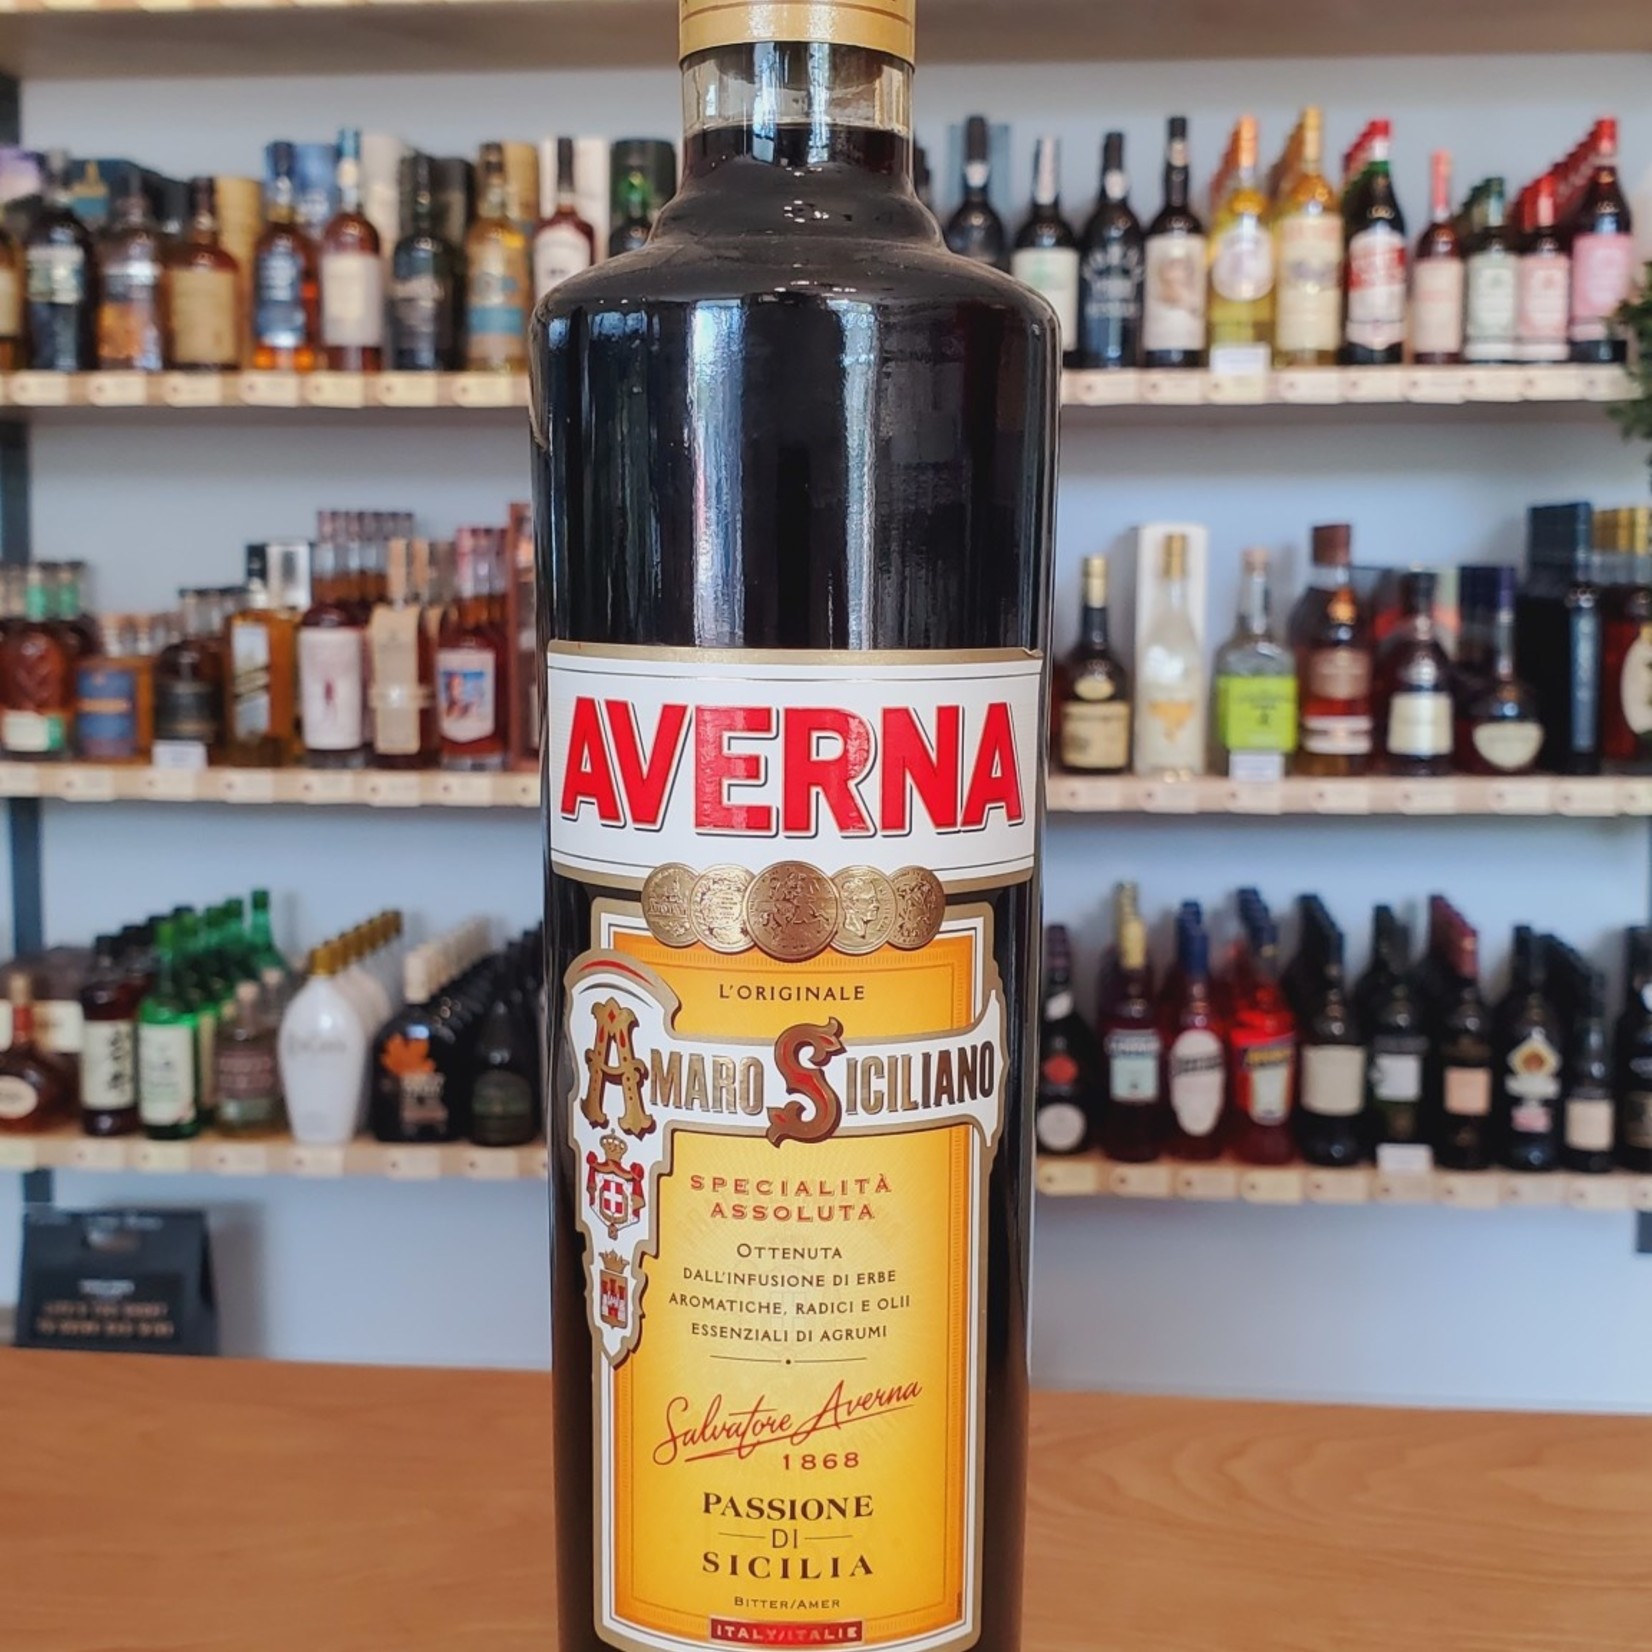 Averna Amaro Siciliano, Averna 750ml 29.0%